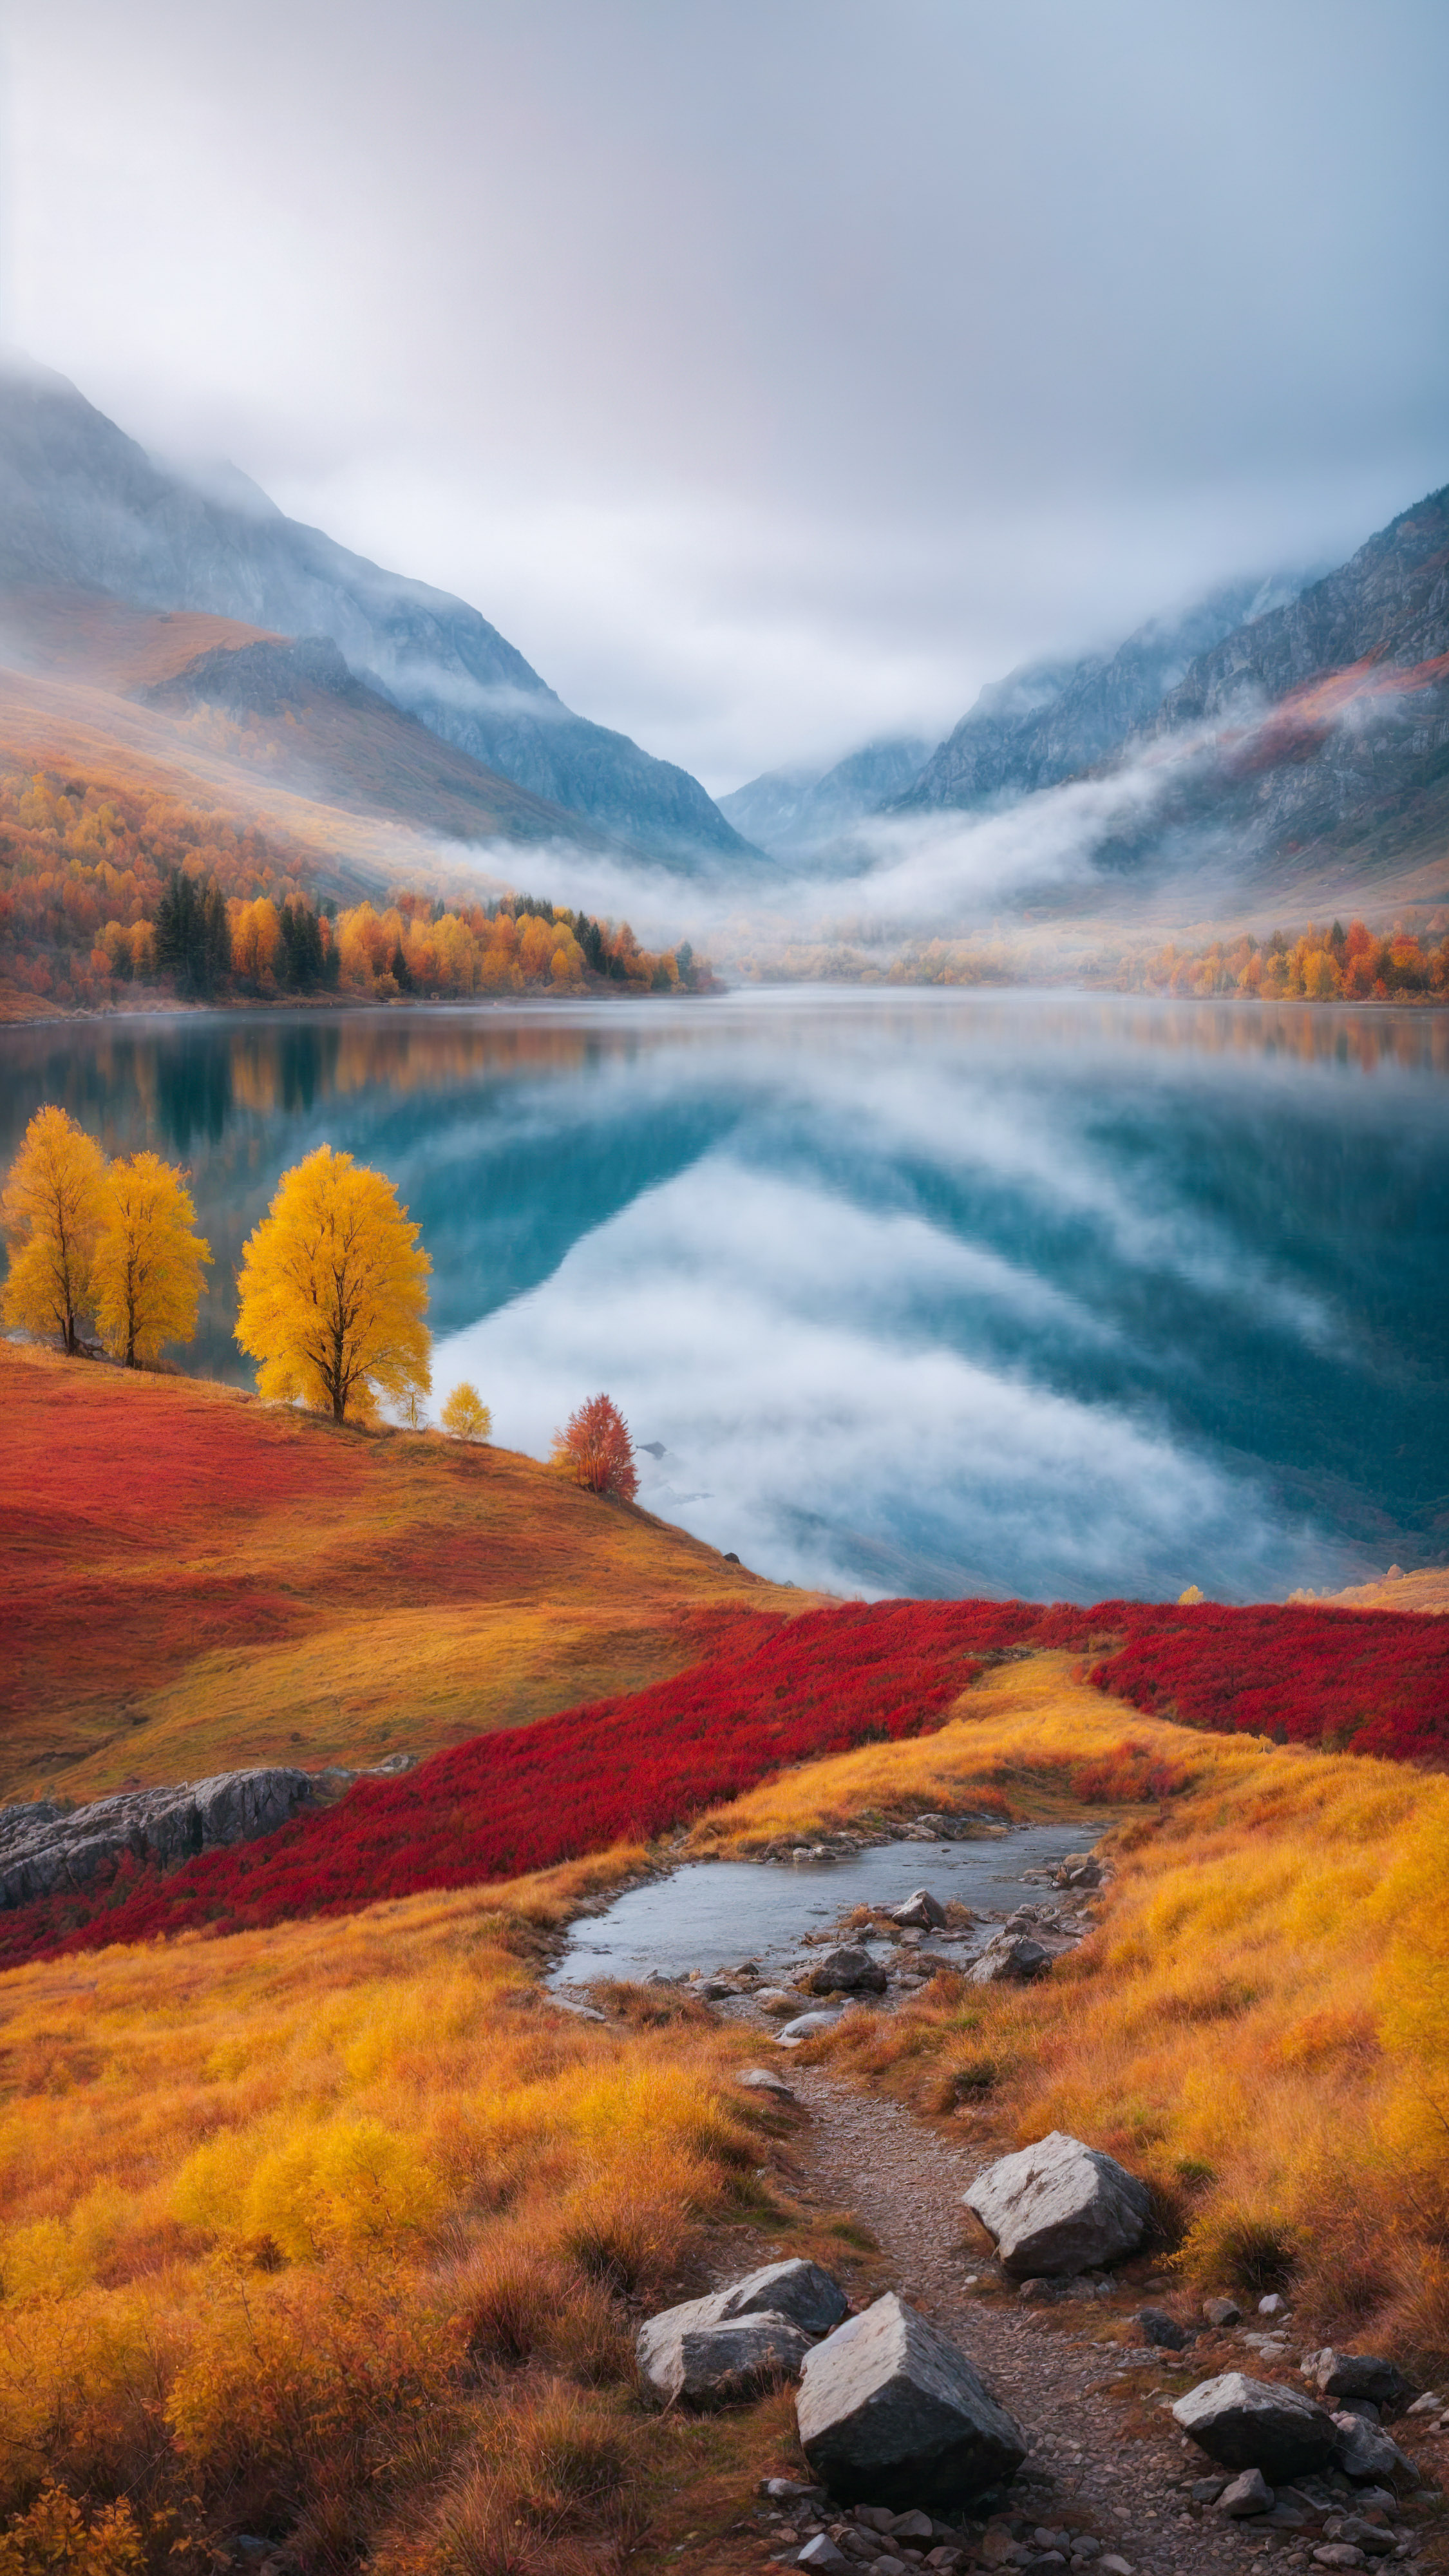 Transformez l'apparence de votre appareil avec un fond d'écran pour iPhone mettant en scène un paysage automnal coloré des montagnes, avec des arbres jaunes et rouges et un lac brumeux.